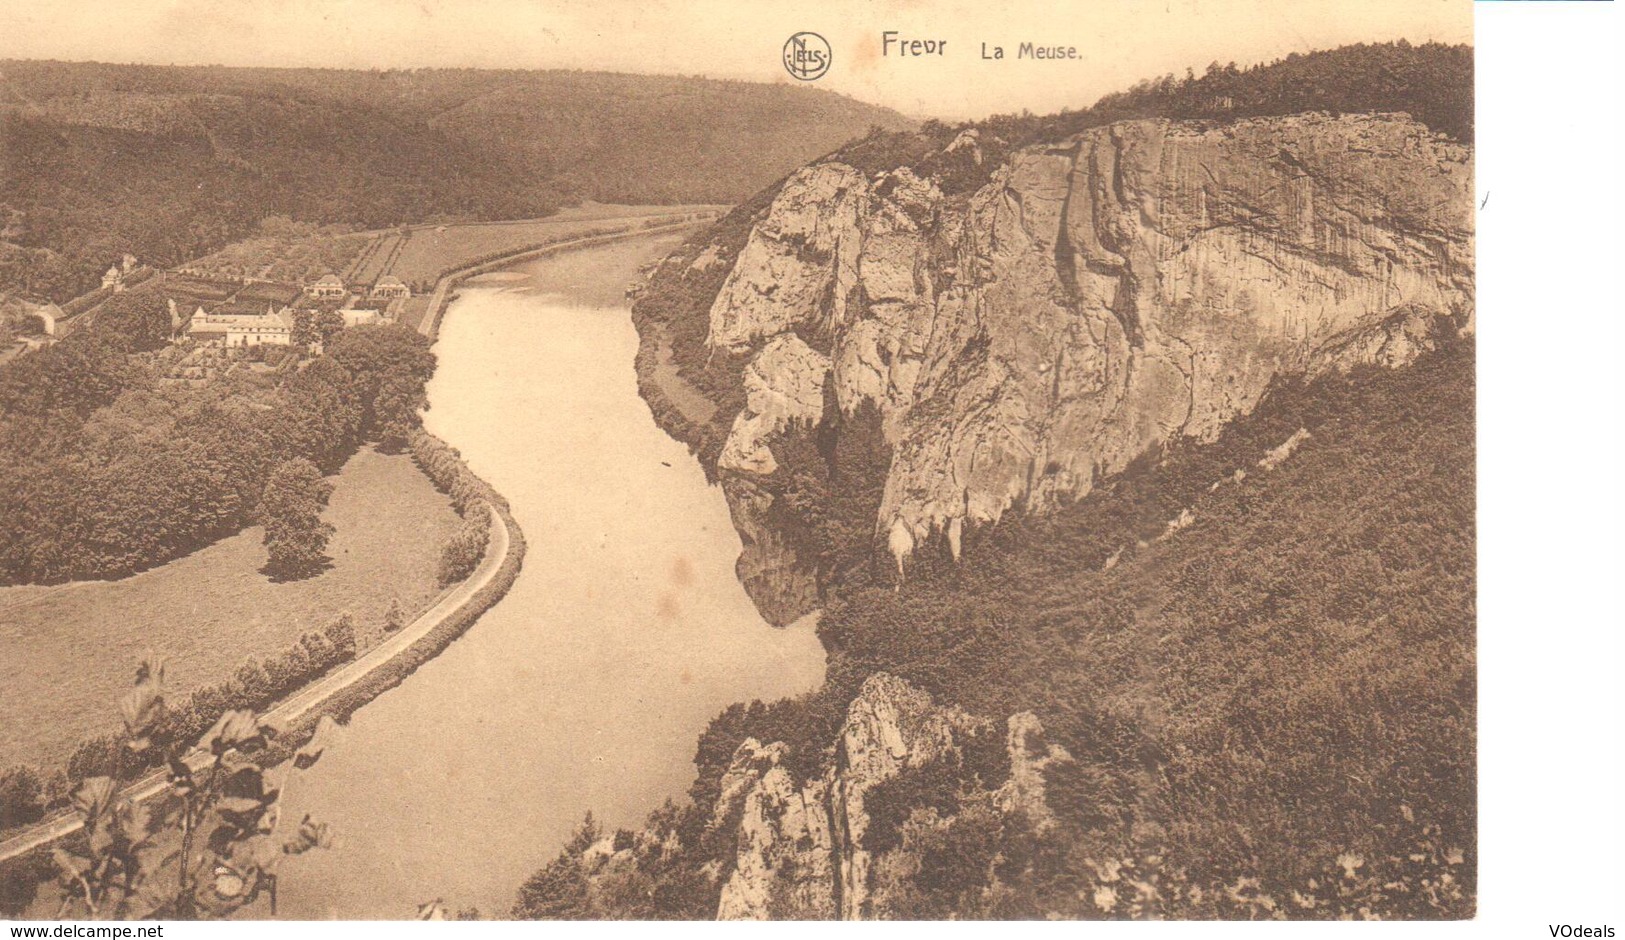 Hastière - CPA - Freyr - La Meuse - Hastière